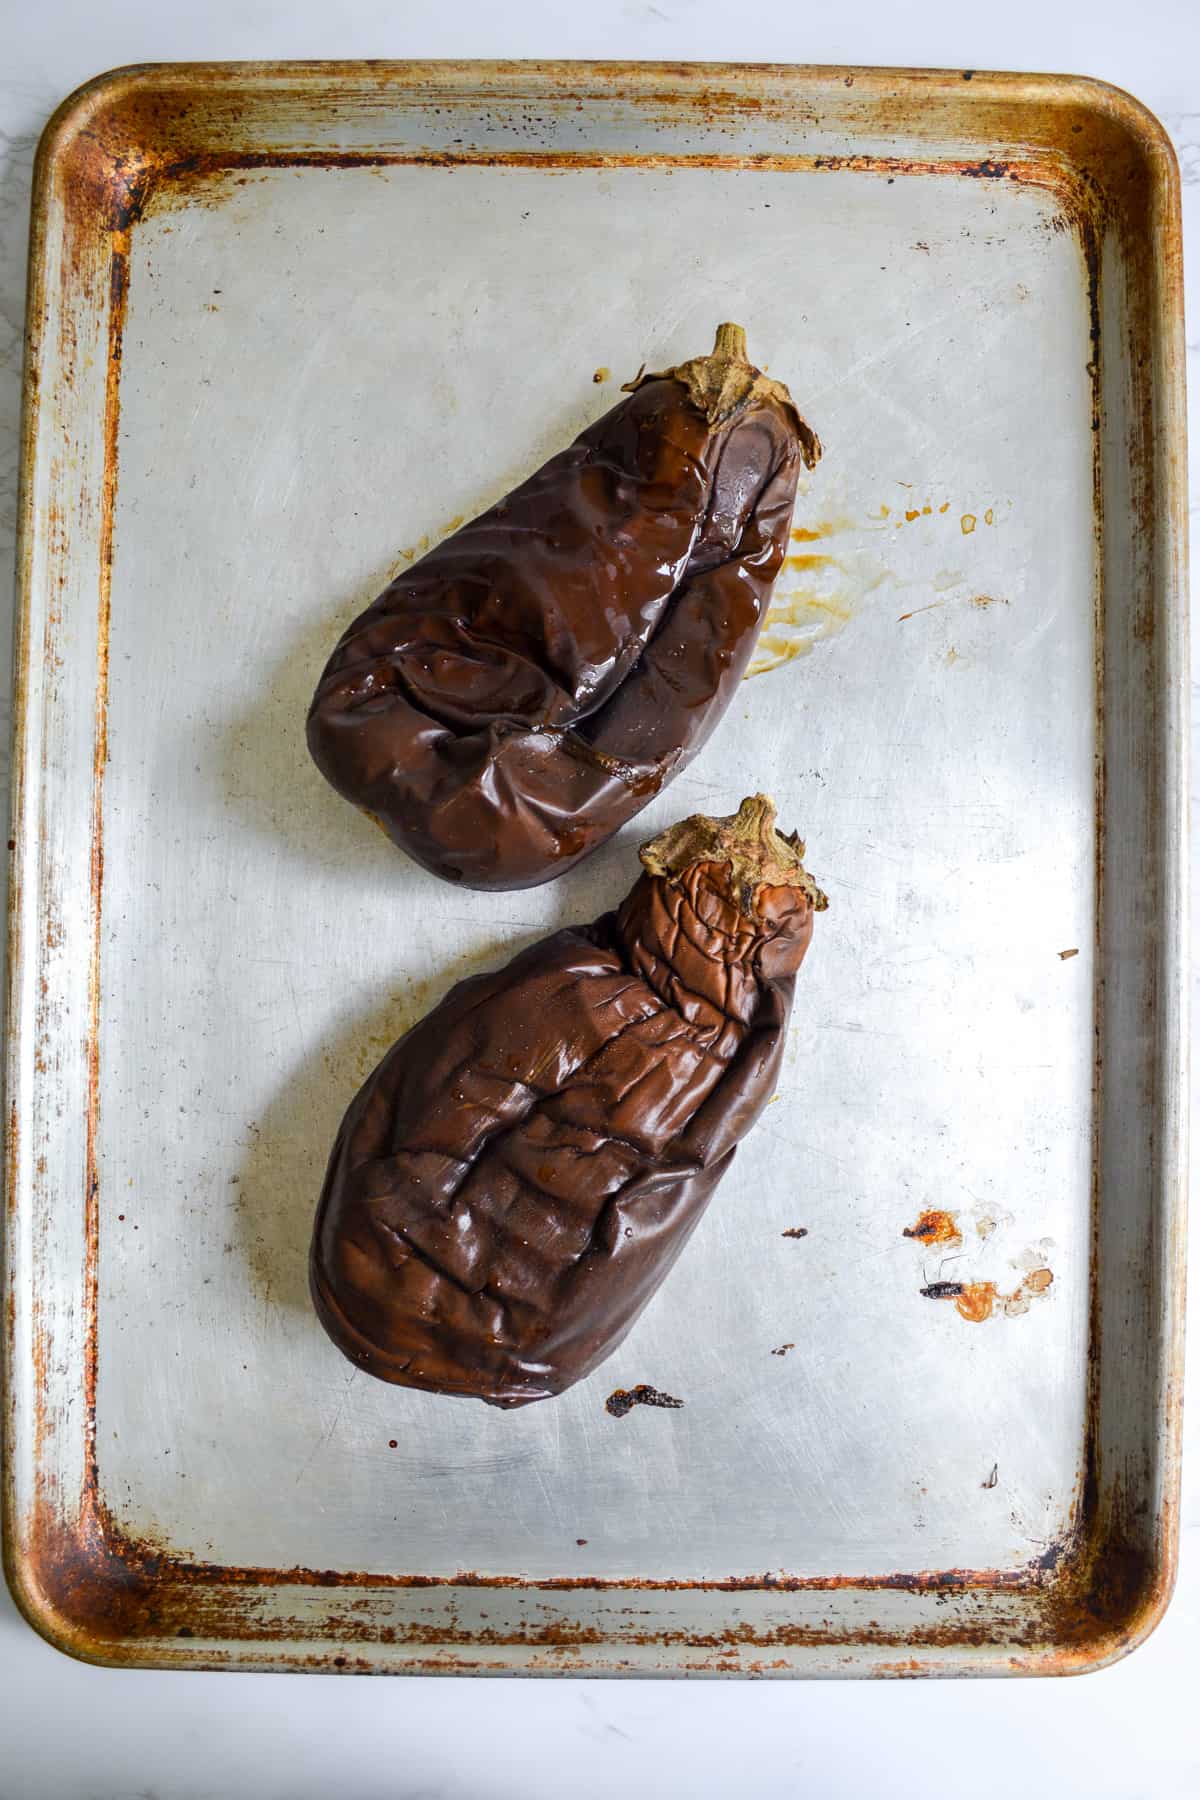 Roasted eggplants on a baking sheet